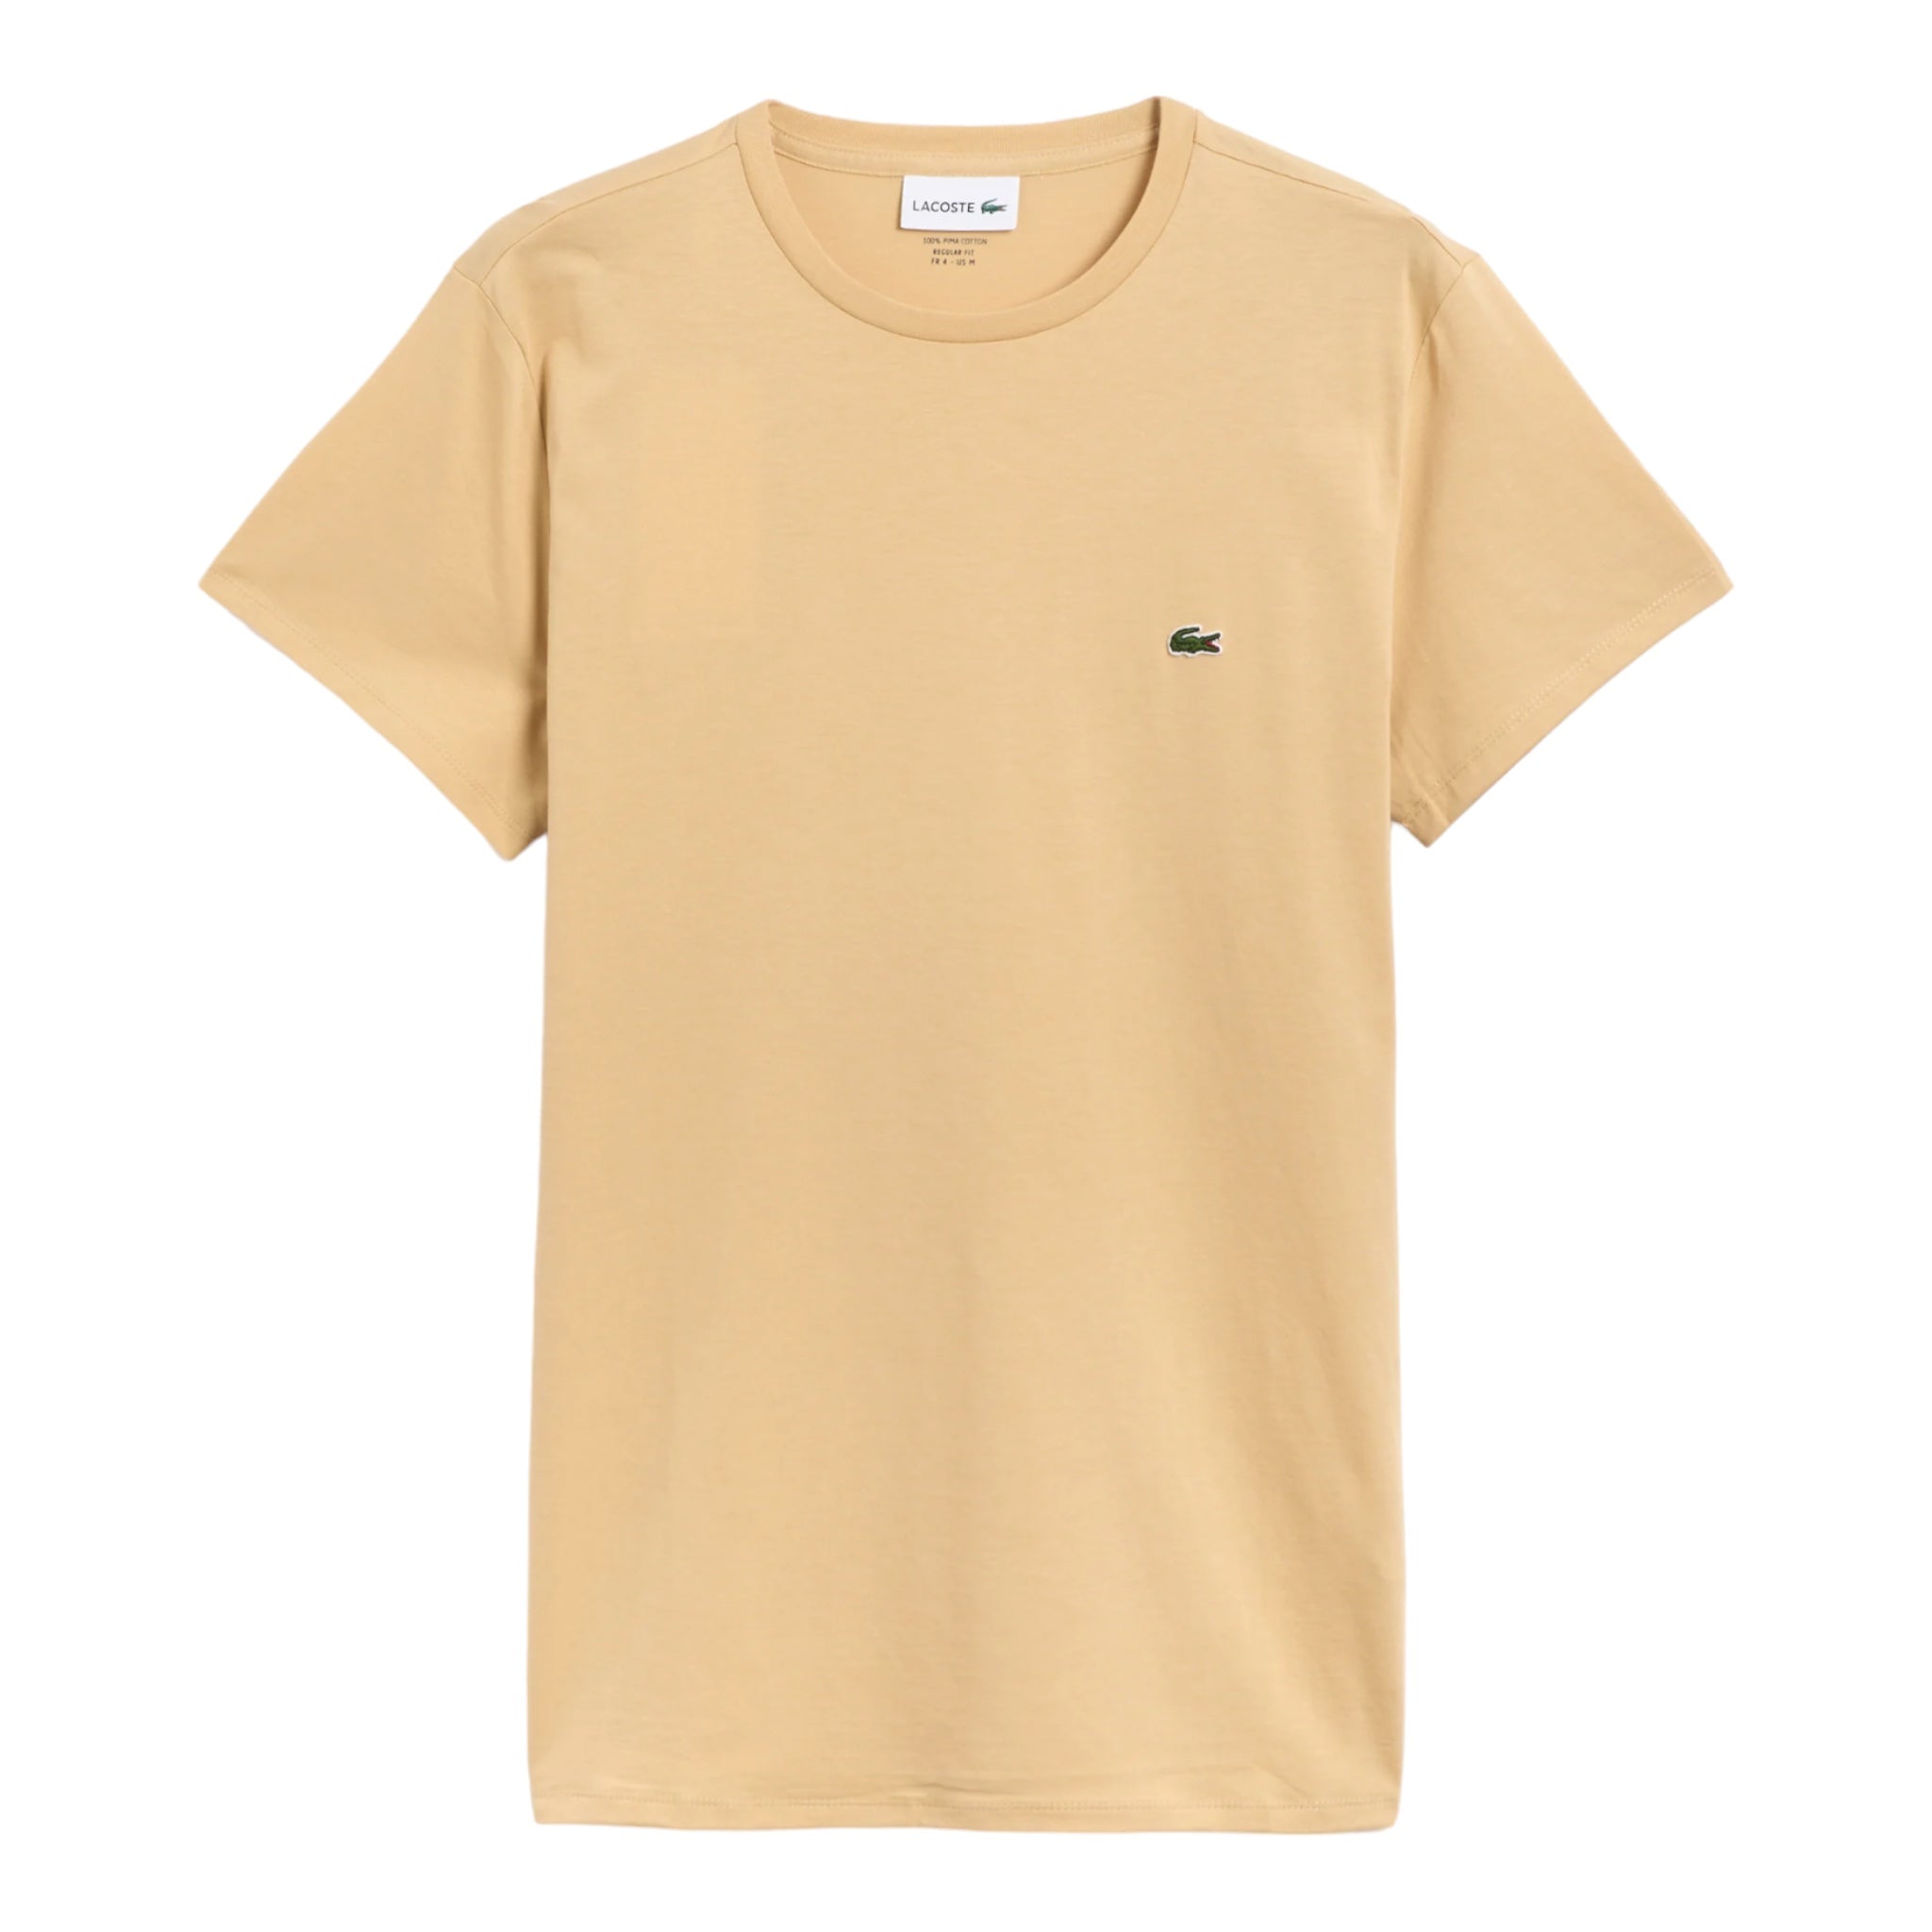 T-Shirt Pima Cotton Regular Fit Beige TH670900IXQ Lacoste